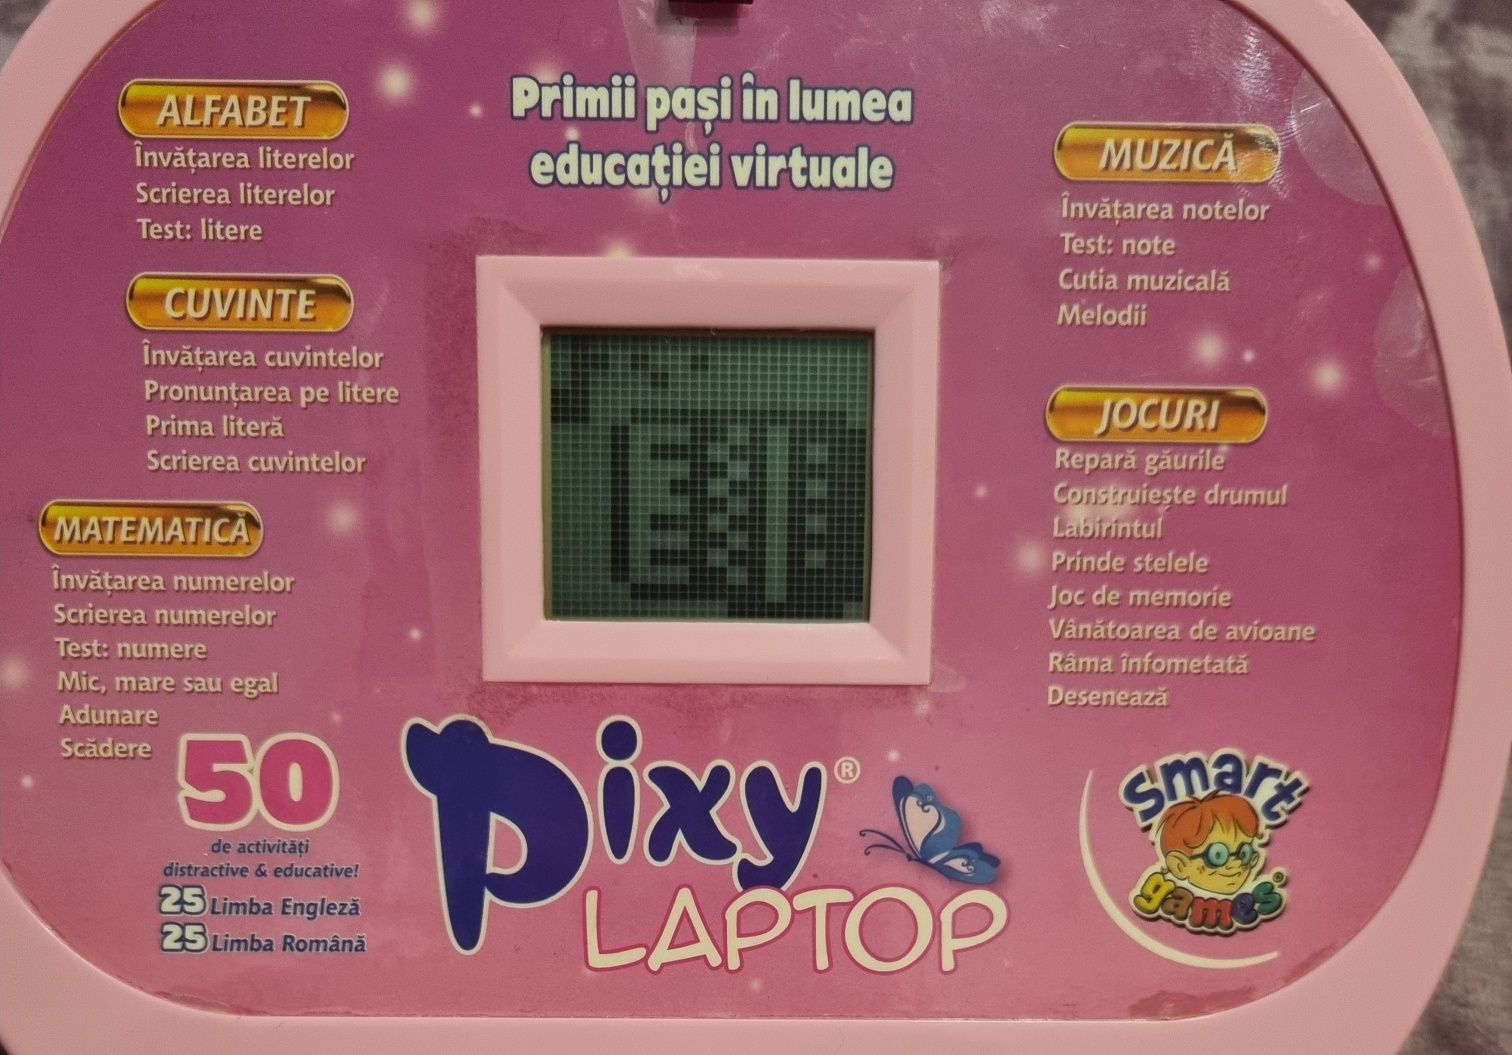 Primul meu Laptop Pixy, marca D-Toys  în lb romana